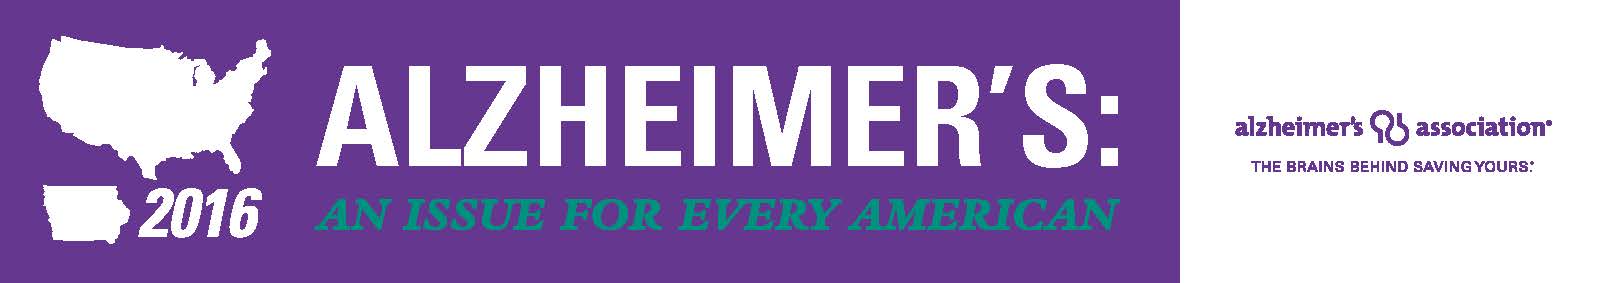 Alzheimer's Campaign Header - Iowa